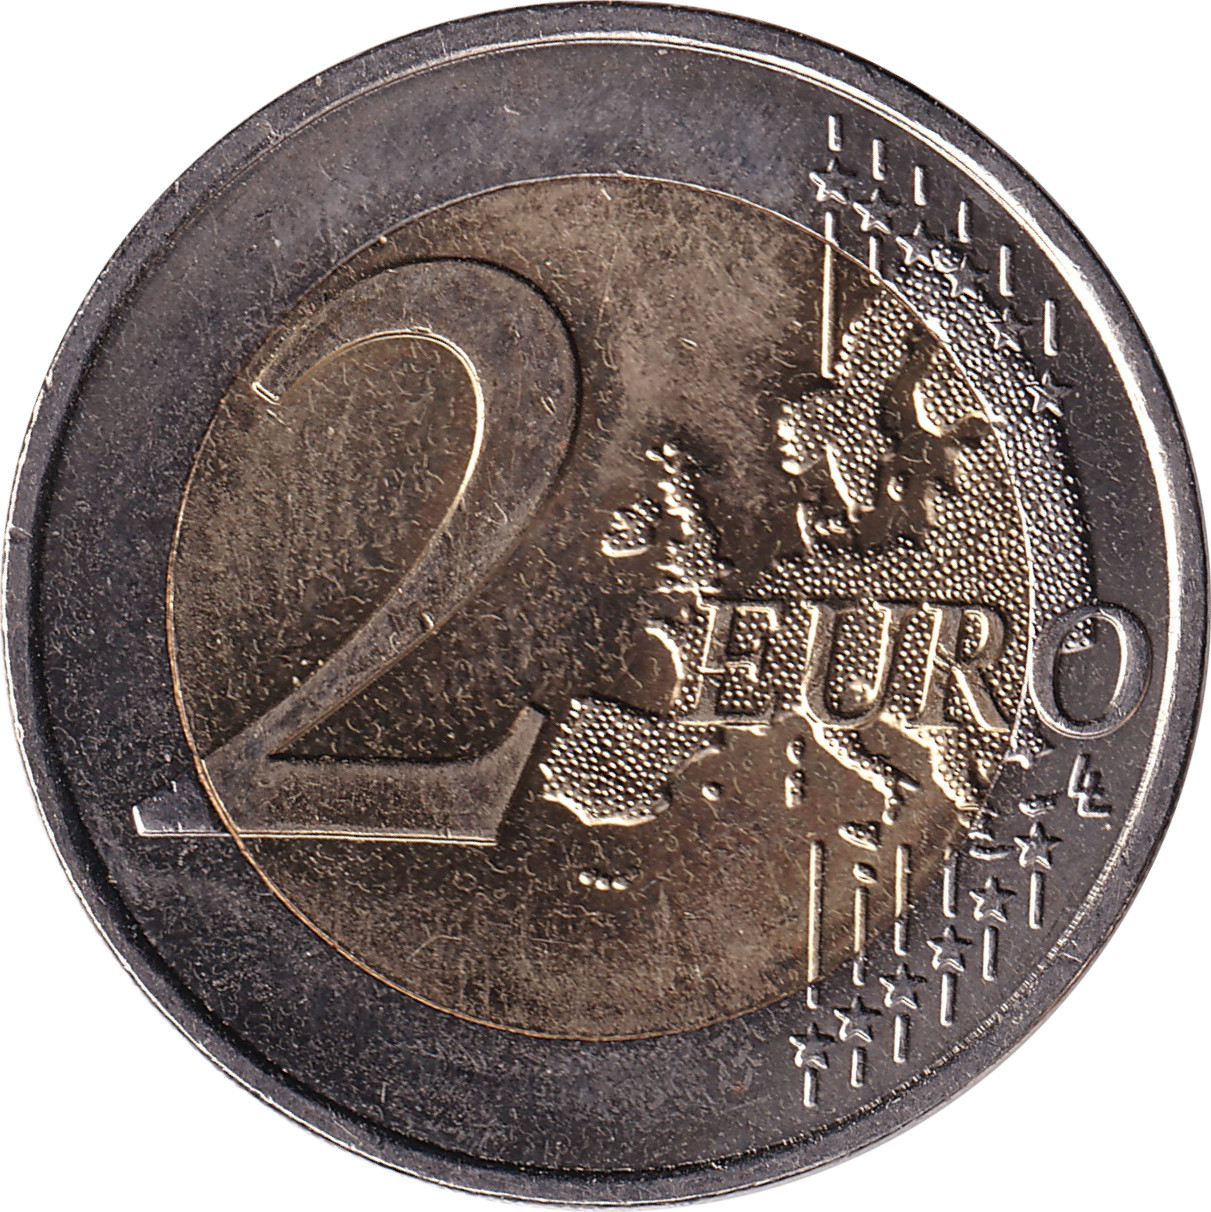 2 euro - François Mittérand